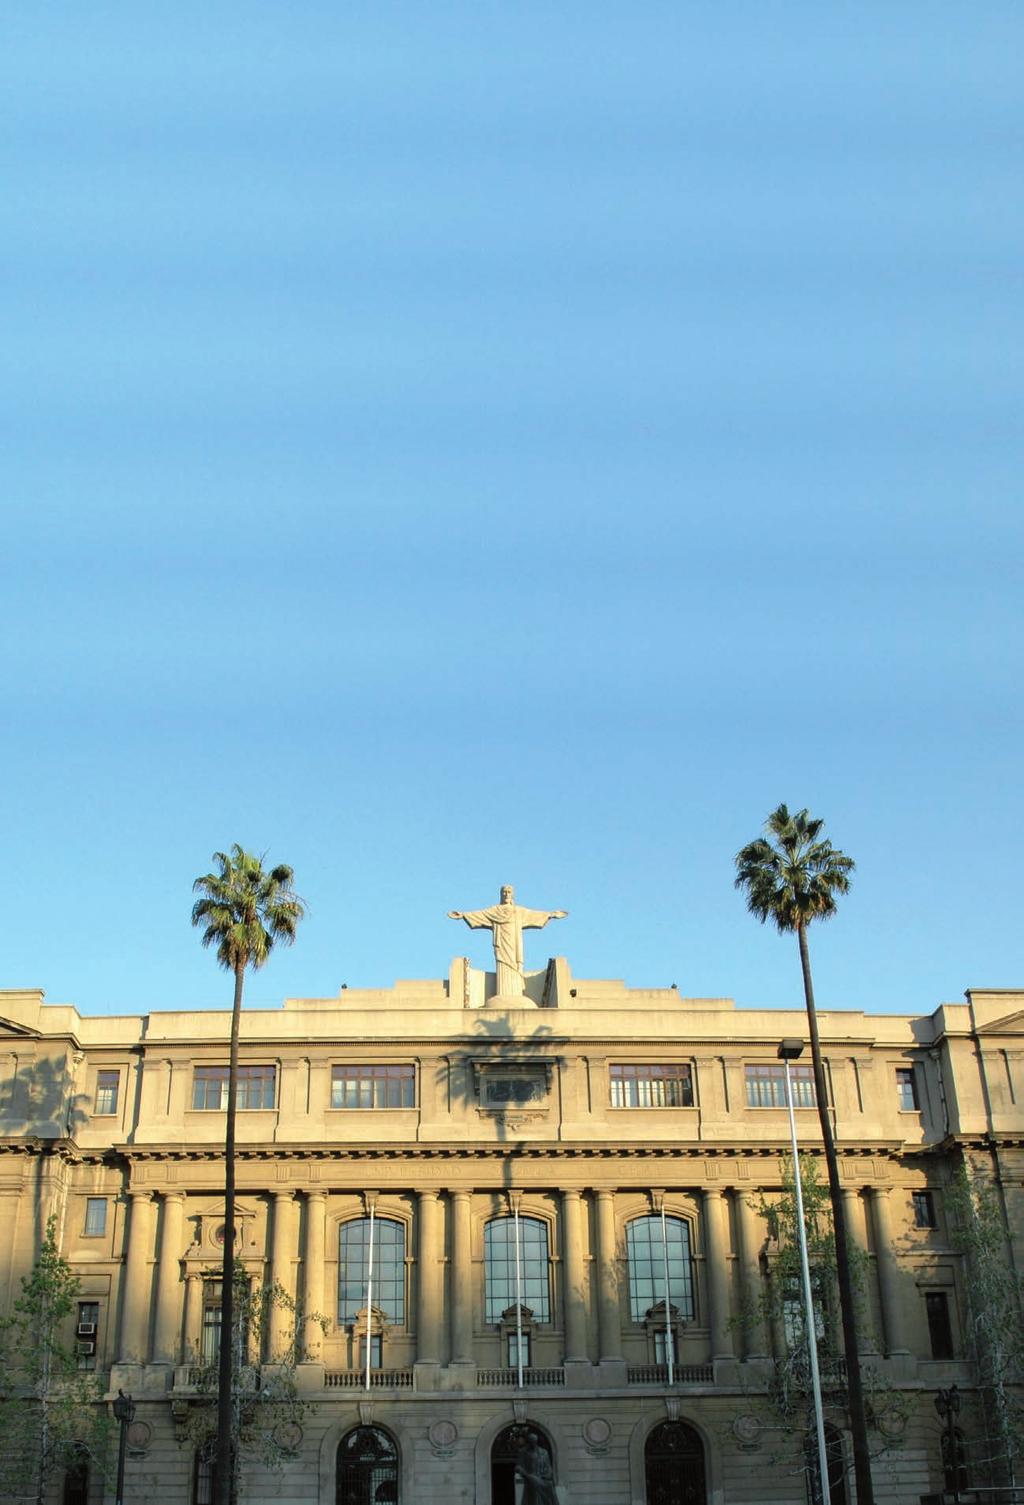 PONTIFICIA UNIVERSIDAD CATÓLICA DE CHILE UN SELLO DE EXCELENCIA En sus más de 125 años de historia, la Pontificia Universidad Católica de Chile ha formado a los grandes líderes, pensadores y